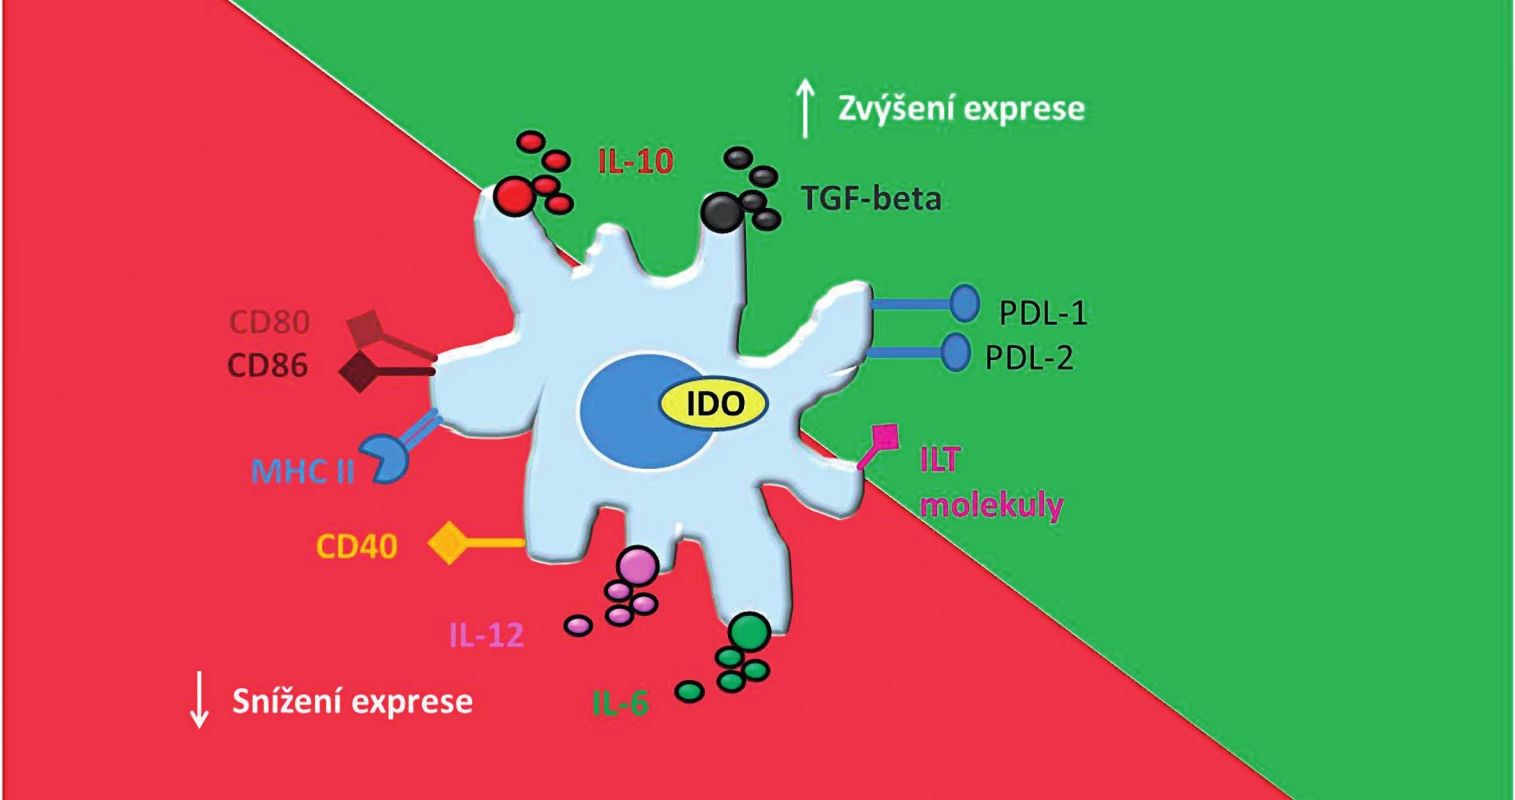 Základní charakteristika tolerogenních dendritických buněk.
Tolerogenní dendritické buňky mají nižší schopnost aktivovat efektorové T-lymfocyty díky snížené expresi &lt;i&gt;kostimulačních&lt;/i&gt; molekul (CD80, CD86, CD40) a MHC molekul. Naopak díky zvýšené expresi imunoregulačních molekul PDL-1,2 a ILT- molekul mají schopnost navodit &lt;i&gt;anergii&lt;/i&gt; či &lt;i&gt;klonální deleci&lt;/i&gt; T-lymfocytů. tDC mají dále příznivý protizánětlivý cytokinový profil, charakterizovaný nízkou nebo žádnou produkcí IL-12 a IL-6 a zvýšenou produkcí IL-10 a TGF-β. Dále exprimují imunoregulační enzym IDO, který dále přispívá k jejich tolerogennímu potenciálu.
CD – cluster of differentiation (diferenciační skupina); MHC – major histocompatibility complex (hlavní histokompatibilní komplex); PDL – programmed death-ligand (ligand programované buněčné smrti); ILT – Immunoglobulin-like transcript (transkript podobný imunoglobulinům); tDC – tolerogenní dendritické buňky; IL – interleukin; TGF-β – transforming growth factor β (transformující růstový faktor beta); IDO – indolamin 2,3–dioxygenáza 
Fig. 1. Basic characteristic of tolerogenic dendritic cells.
tDC have a limited ability to prime T cells and induce their anergy or clonal deletion because of down-regulation of co-stimulatory molecules (CD80, CD86, CD40) and MHC molecules and up-regulation of immunoregulatory molecules (PDL-1,2 and ILT molecules). tDC display appropriate anti-inflammatory cytokine profile, which is defined by a low or none production of IL-12 and IL-6 and high production of IL-10 and TGF-β. Moreover, expression of immunomodulatory enzyme IDO contributes to their tolerogenic potential.
CD – cluster of differentiation; MHC – major histocompatibility complex; PDL – programmed death-ligand; ILT – immunoglobulin- like transcript; tDC – tolerogenic dendritic cells; IL – interleukin; TGF-β – transforming growth factor β; IDO – indoleamine 2,3-dioxygenase